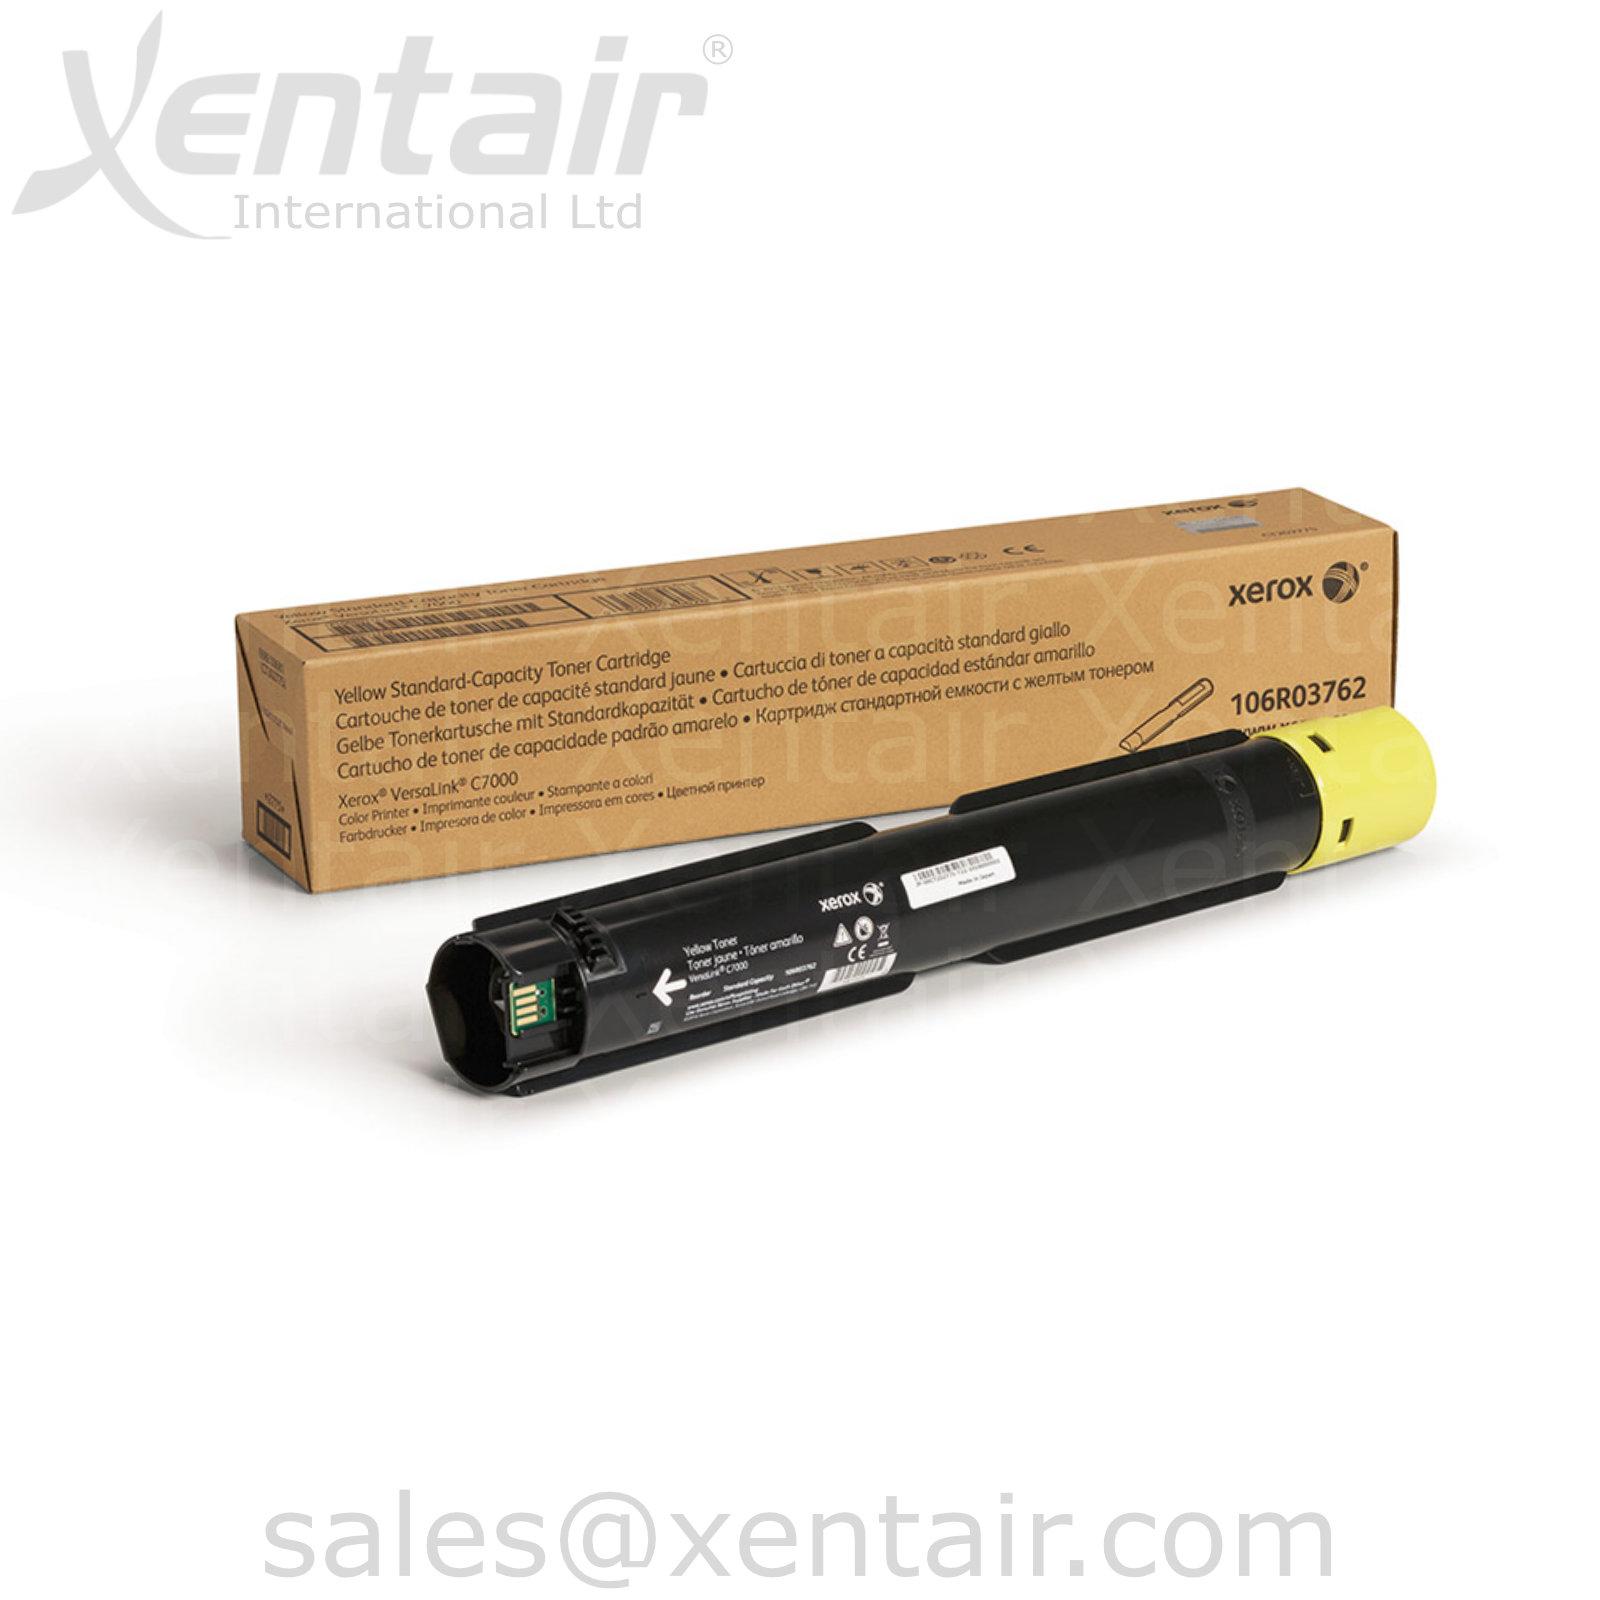 Xerox® VersaLink® C7000 Yellow Standard Capacity Toner Cartridge 106R03762 106R3762